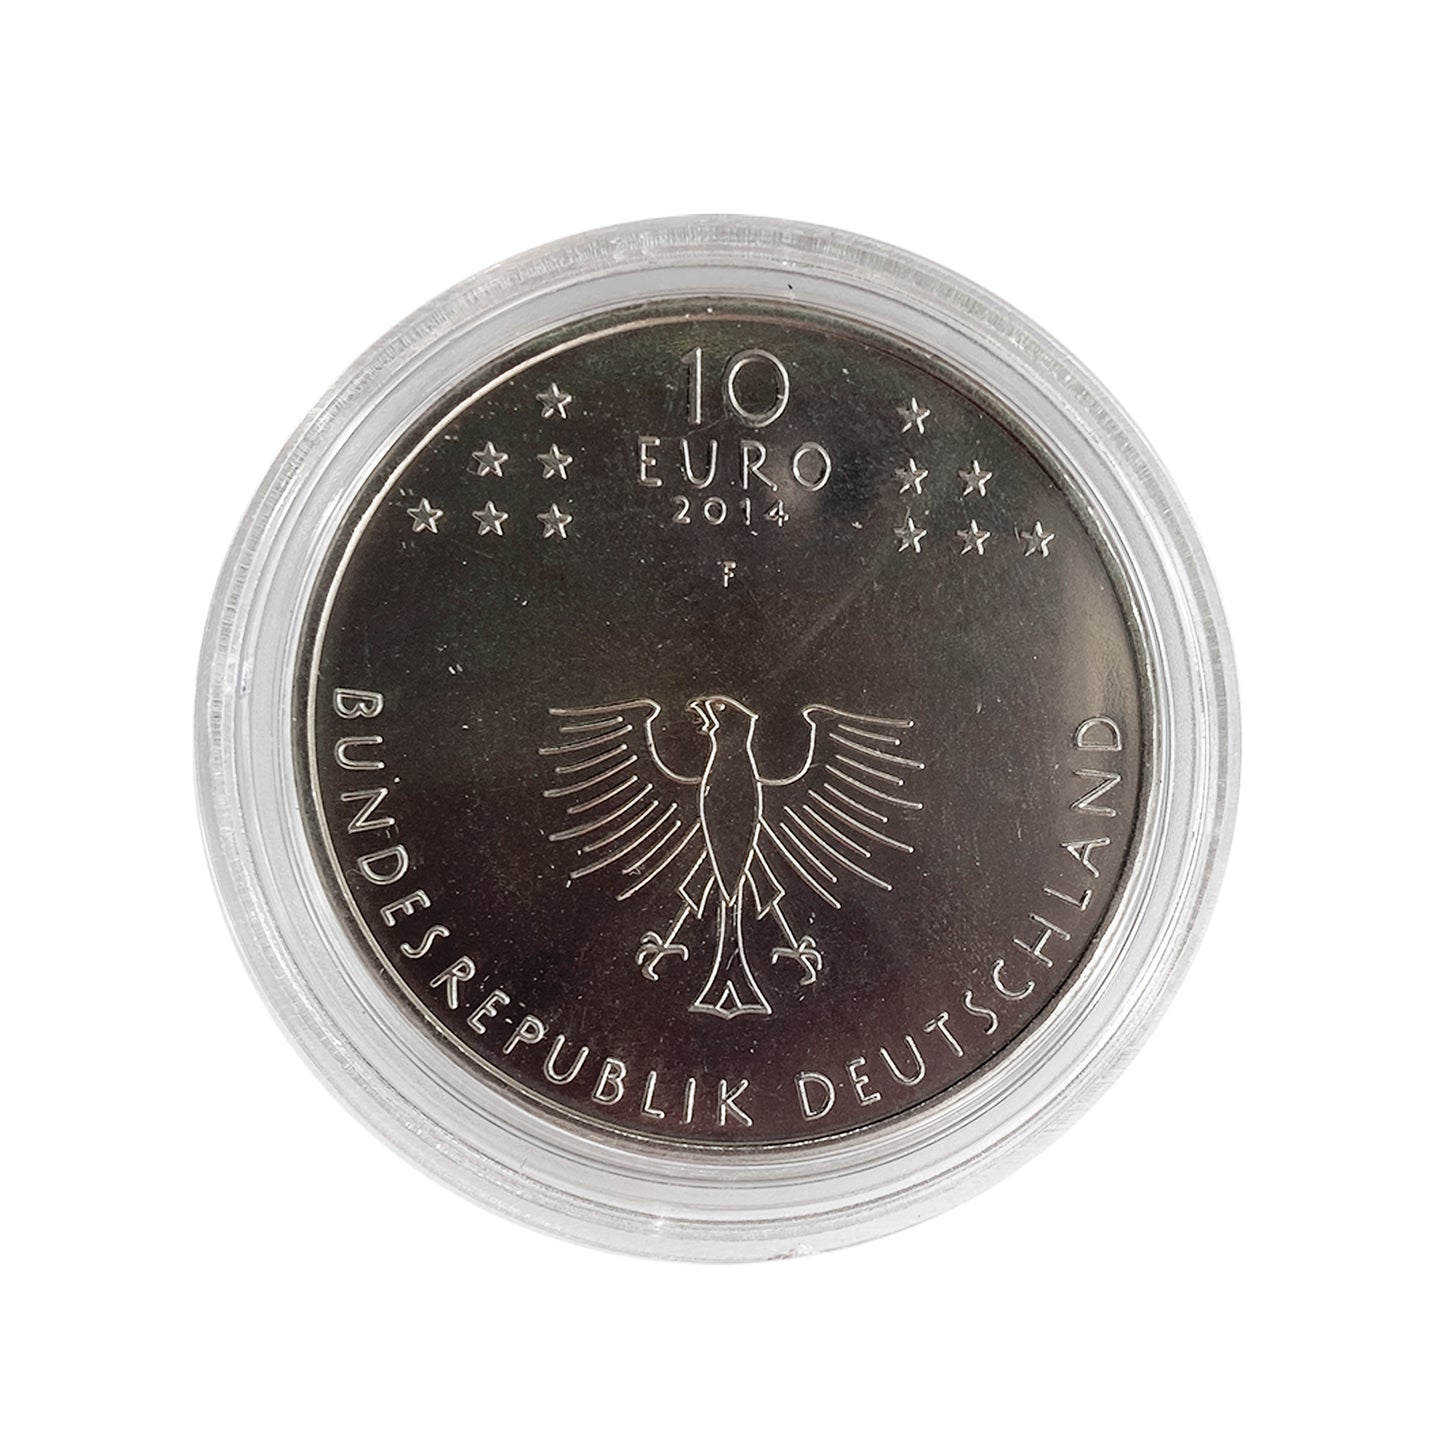 Alemania - Moneda 10 euros cuproníquel 2014 - 600 años del Concilio de Constanza